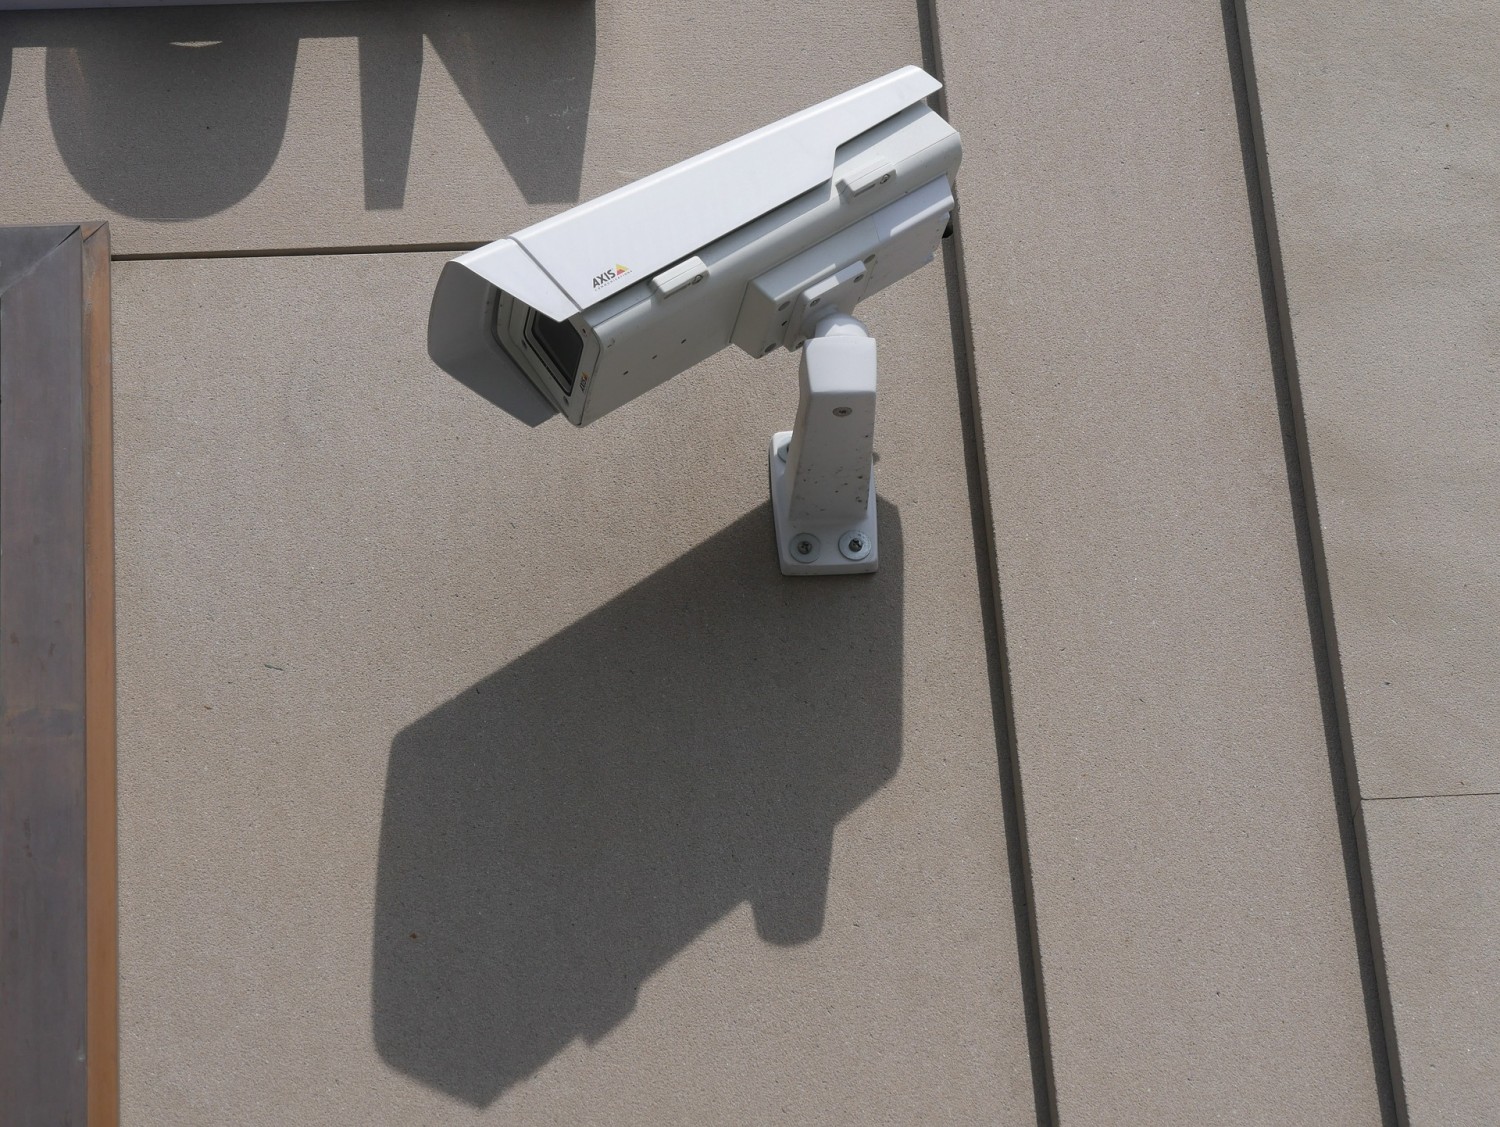 outdoor surveillance camera